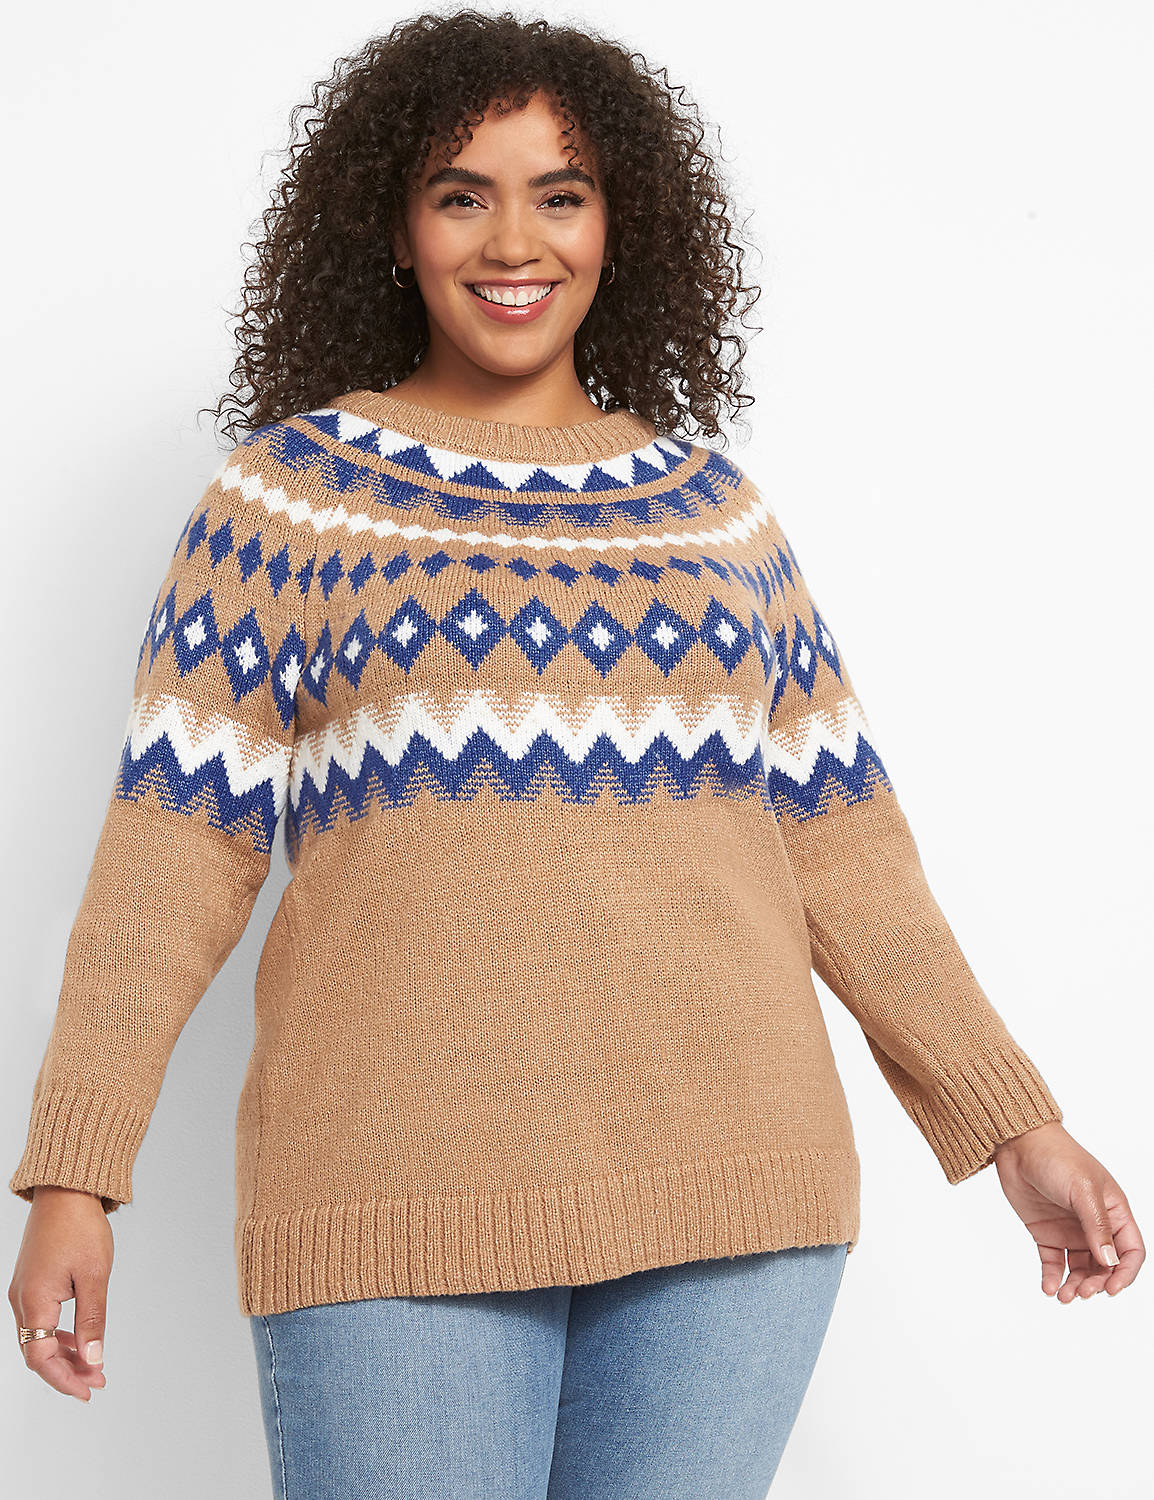 Raglan-Sleeve Fair Isle Sweater Product Image 1